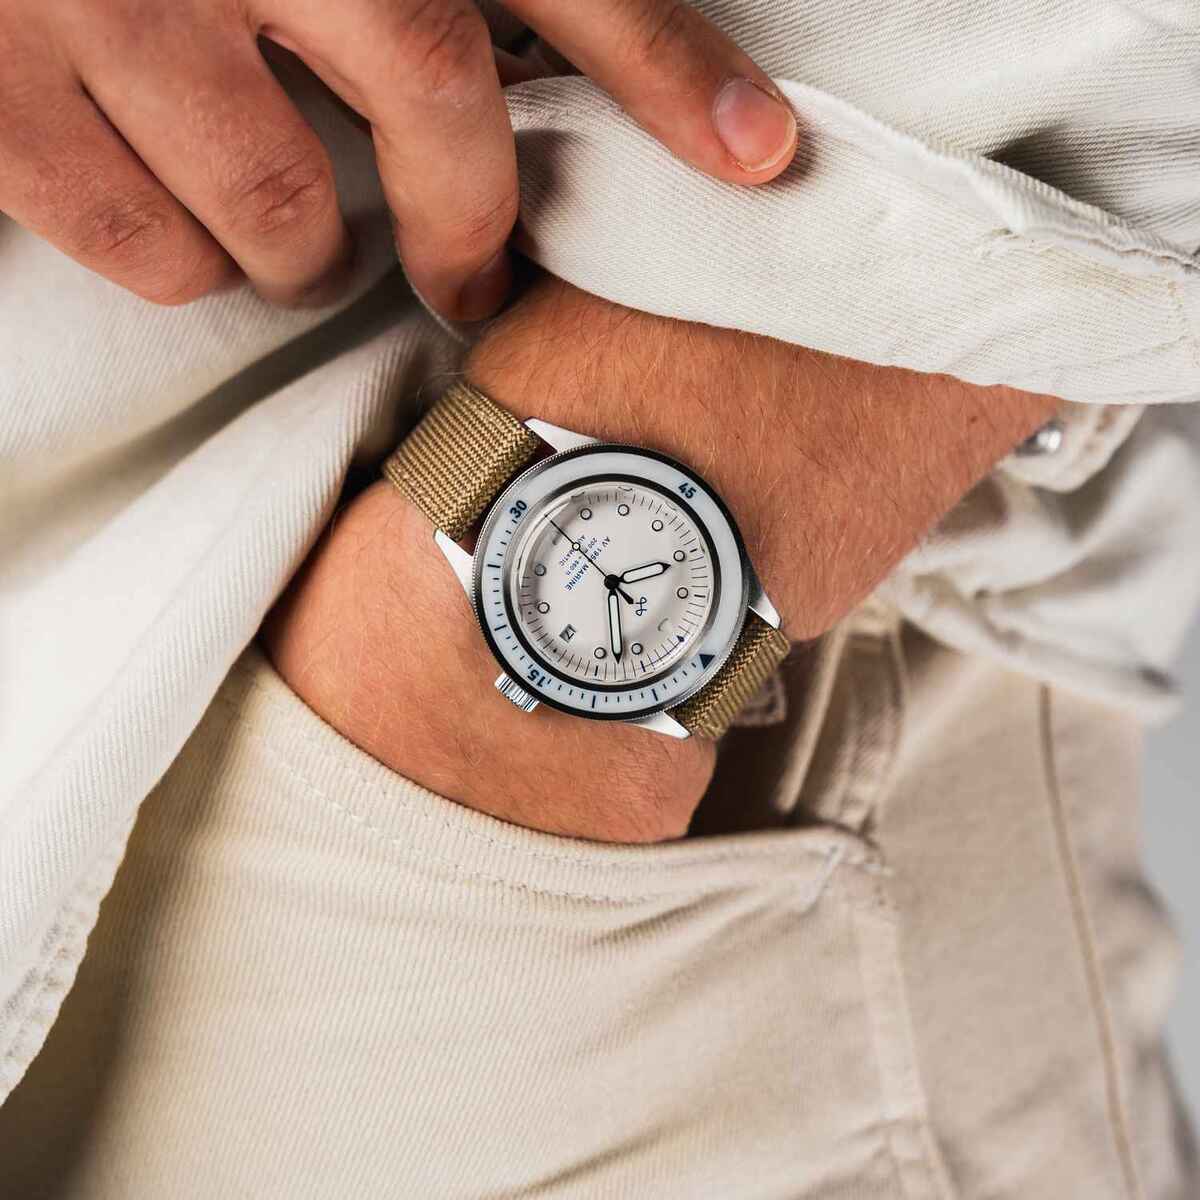 北欧腕時計ブランド「About Vintage」から、機械式ダイバーズウォッチ登場 – ホワイトは100本限定生産